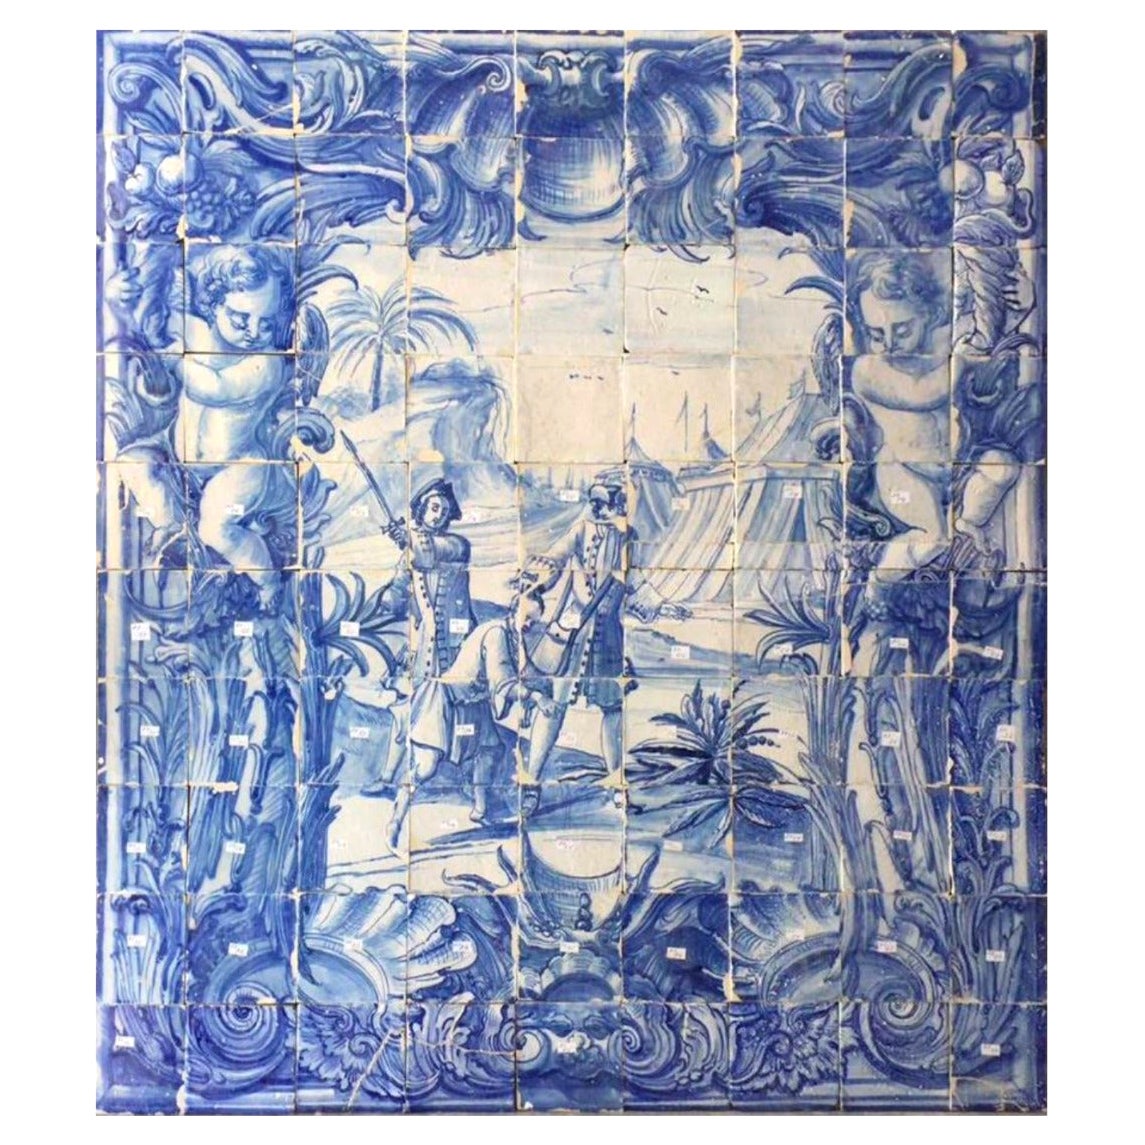 Panneau portugais « Azulejos » du 18ème siècle « Scène de bouteille »